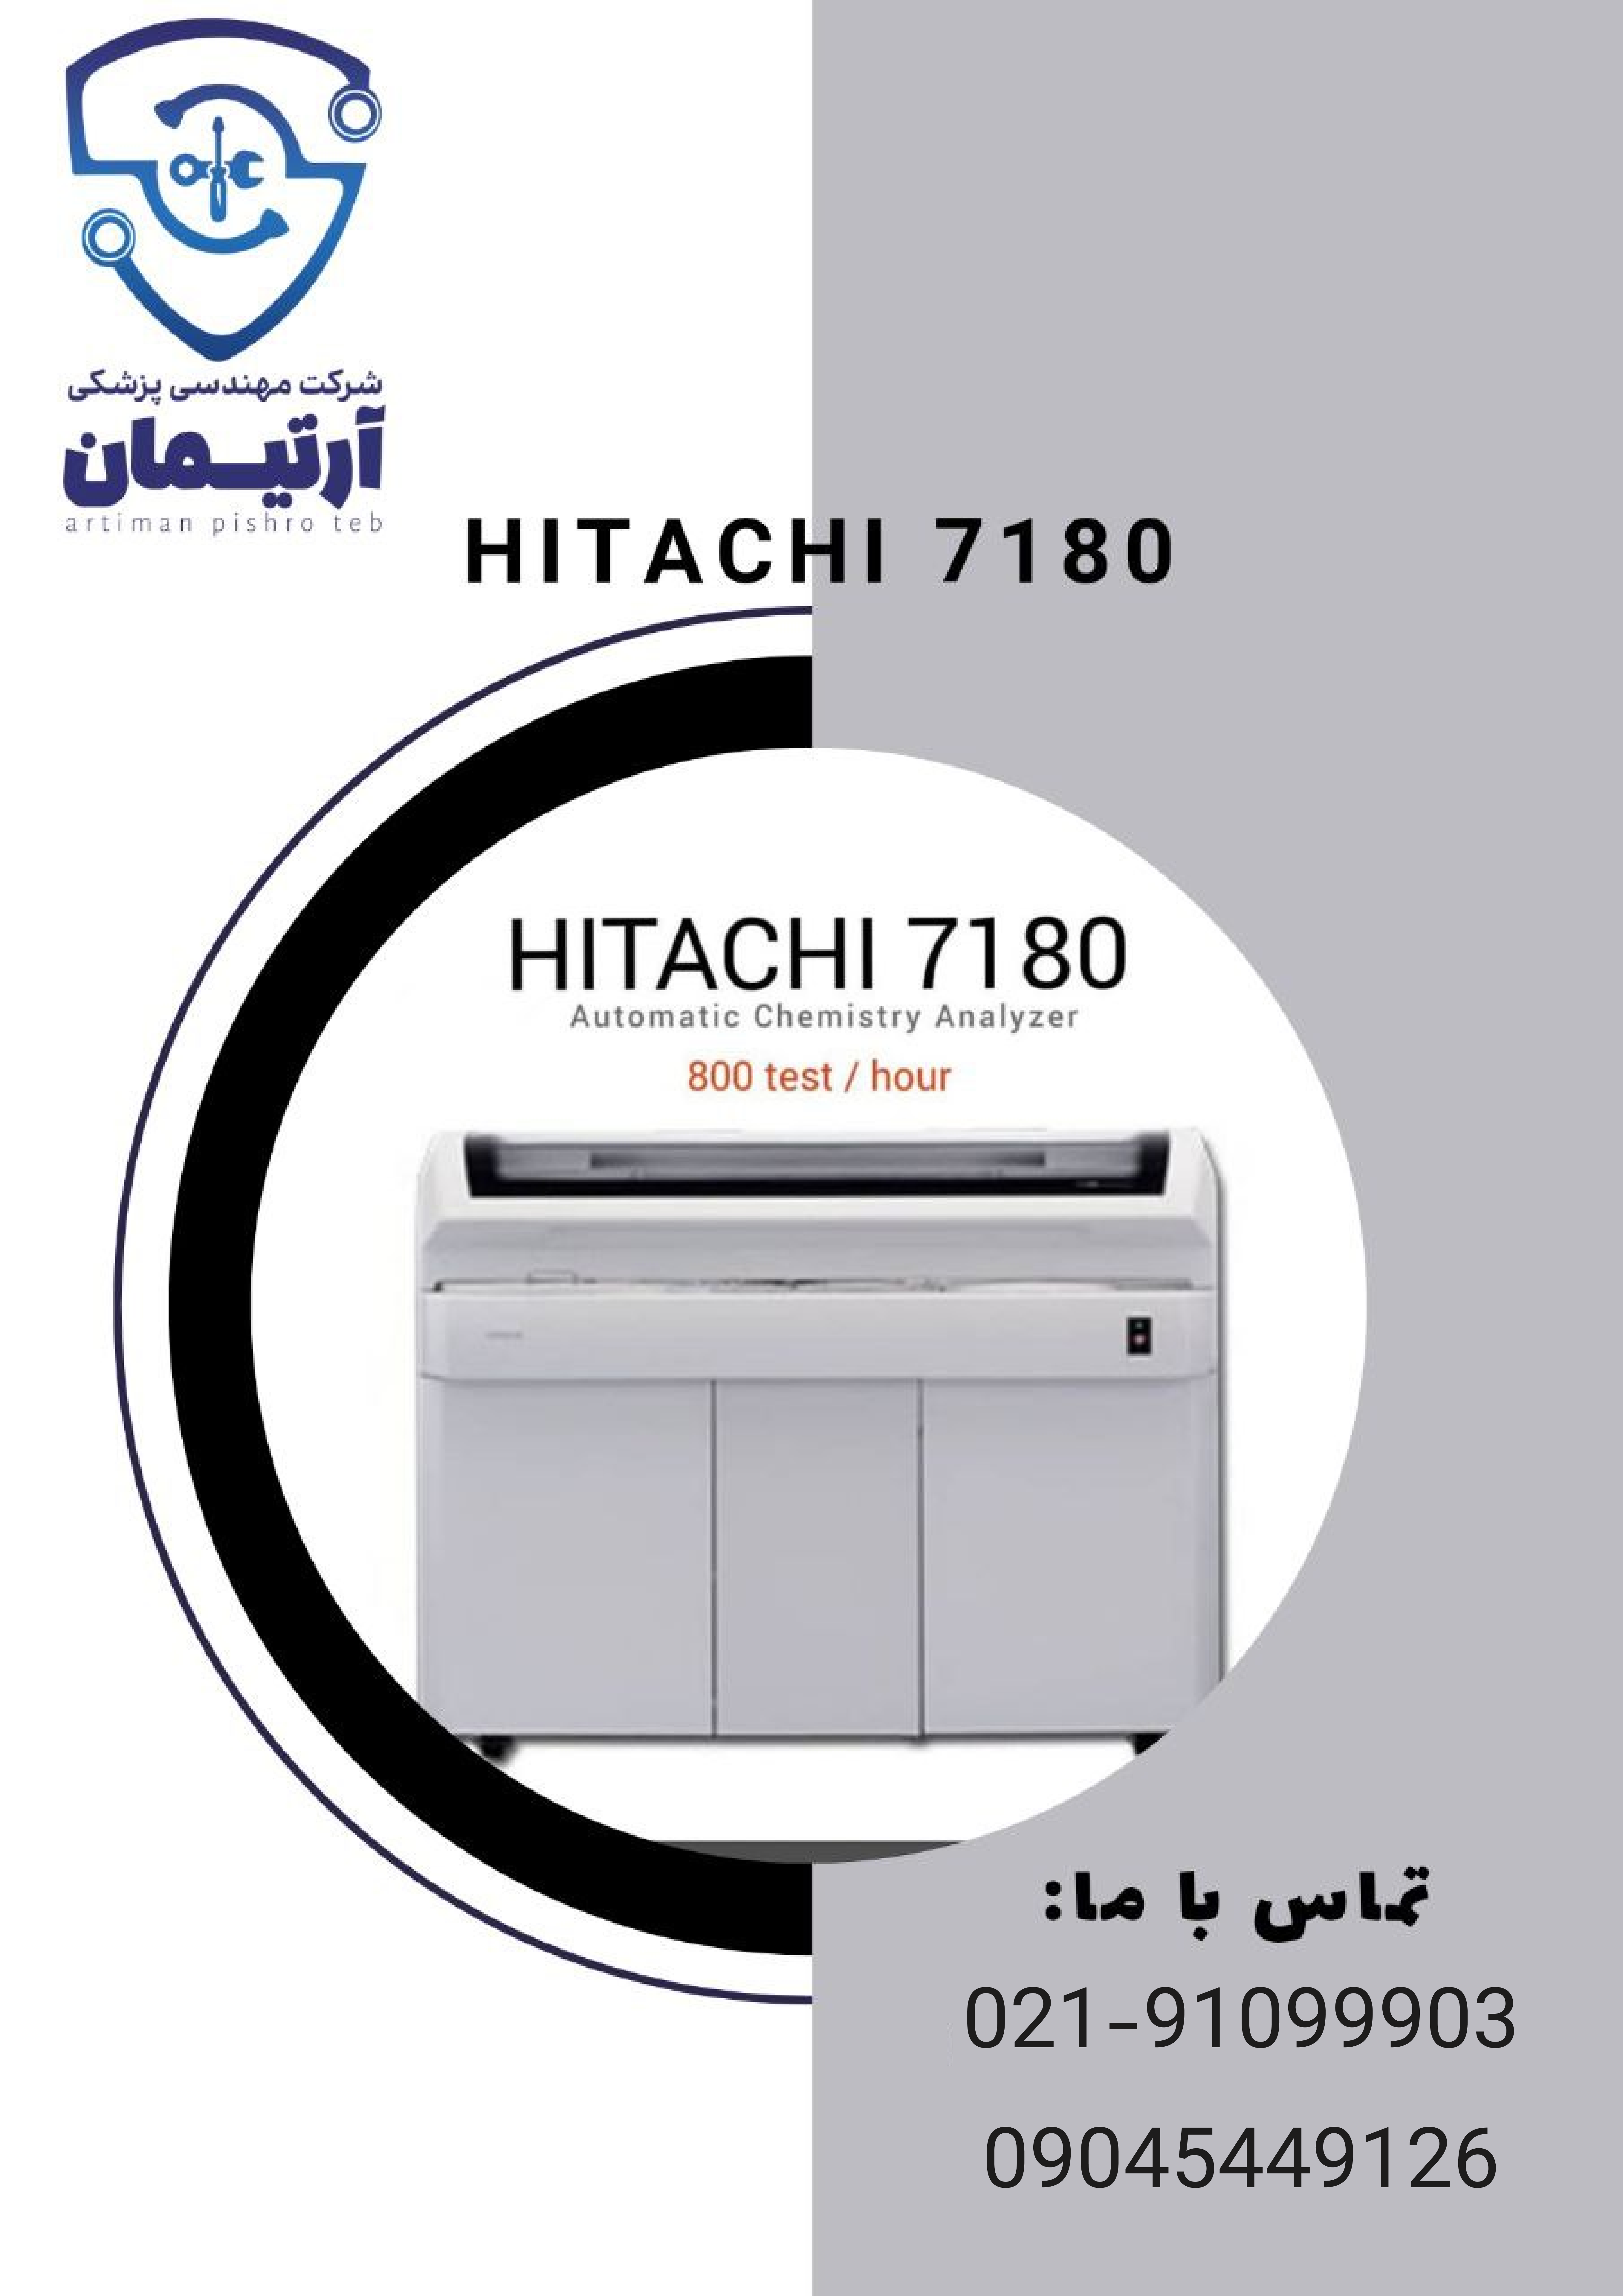 فروش، دستگاه اتوآنالایزر، Hitachi7180